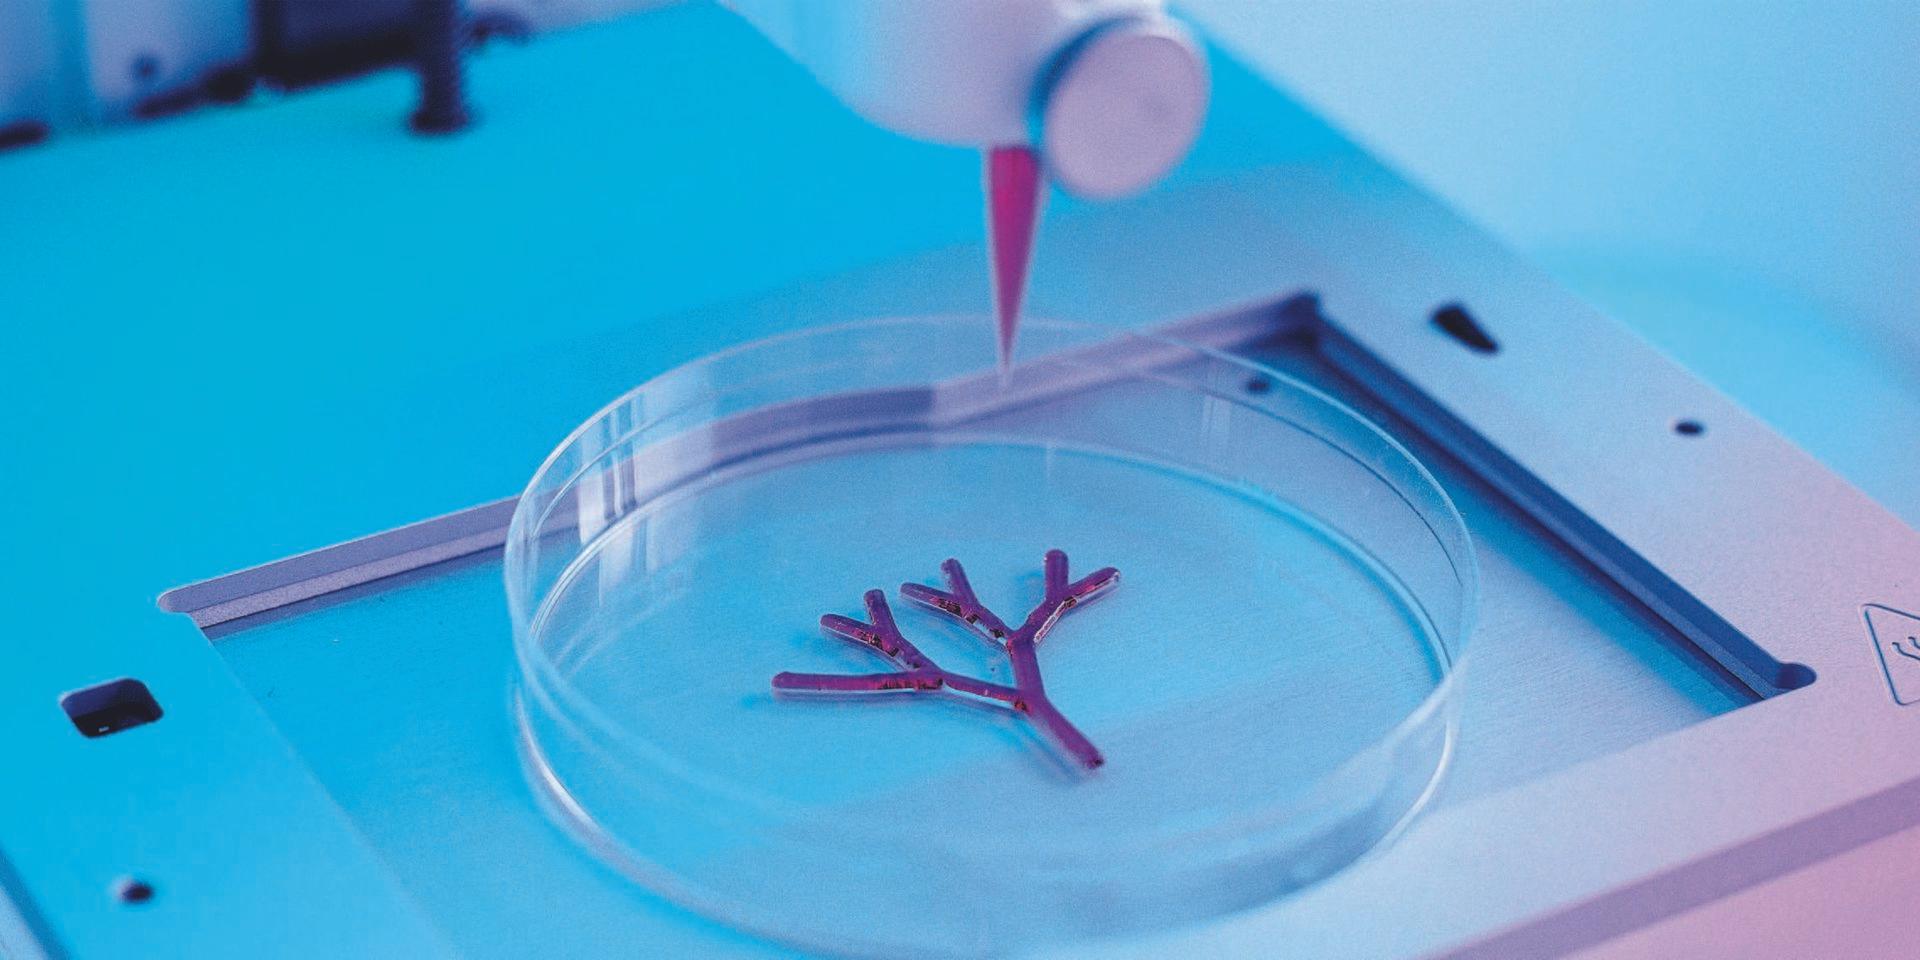 Medicinteknikföretaget Cellink är specialiserade på biobläckskrivare – man har utveckliat teknik för att skriva ut mänsklig vävnad.